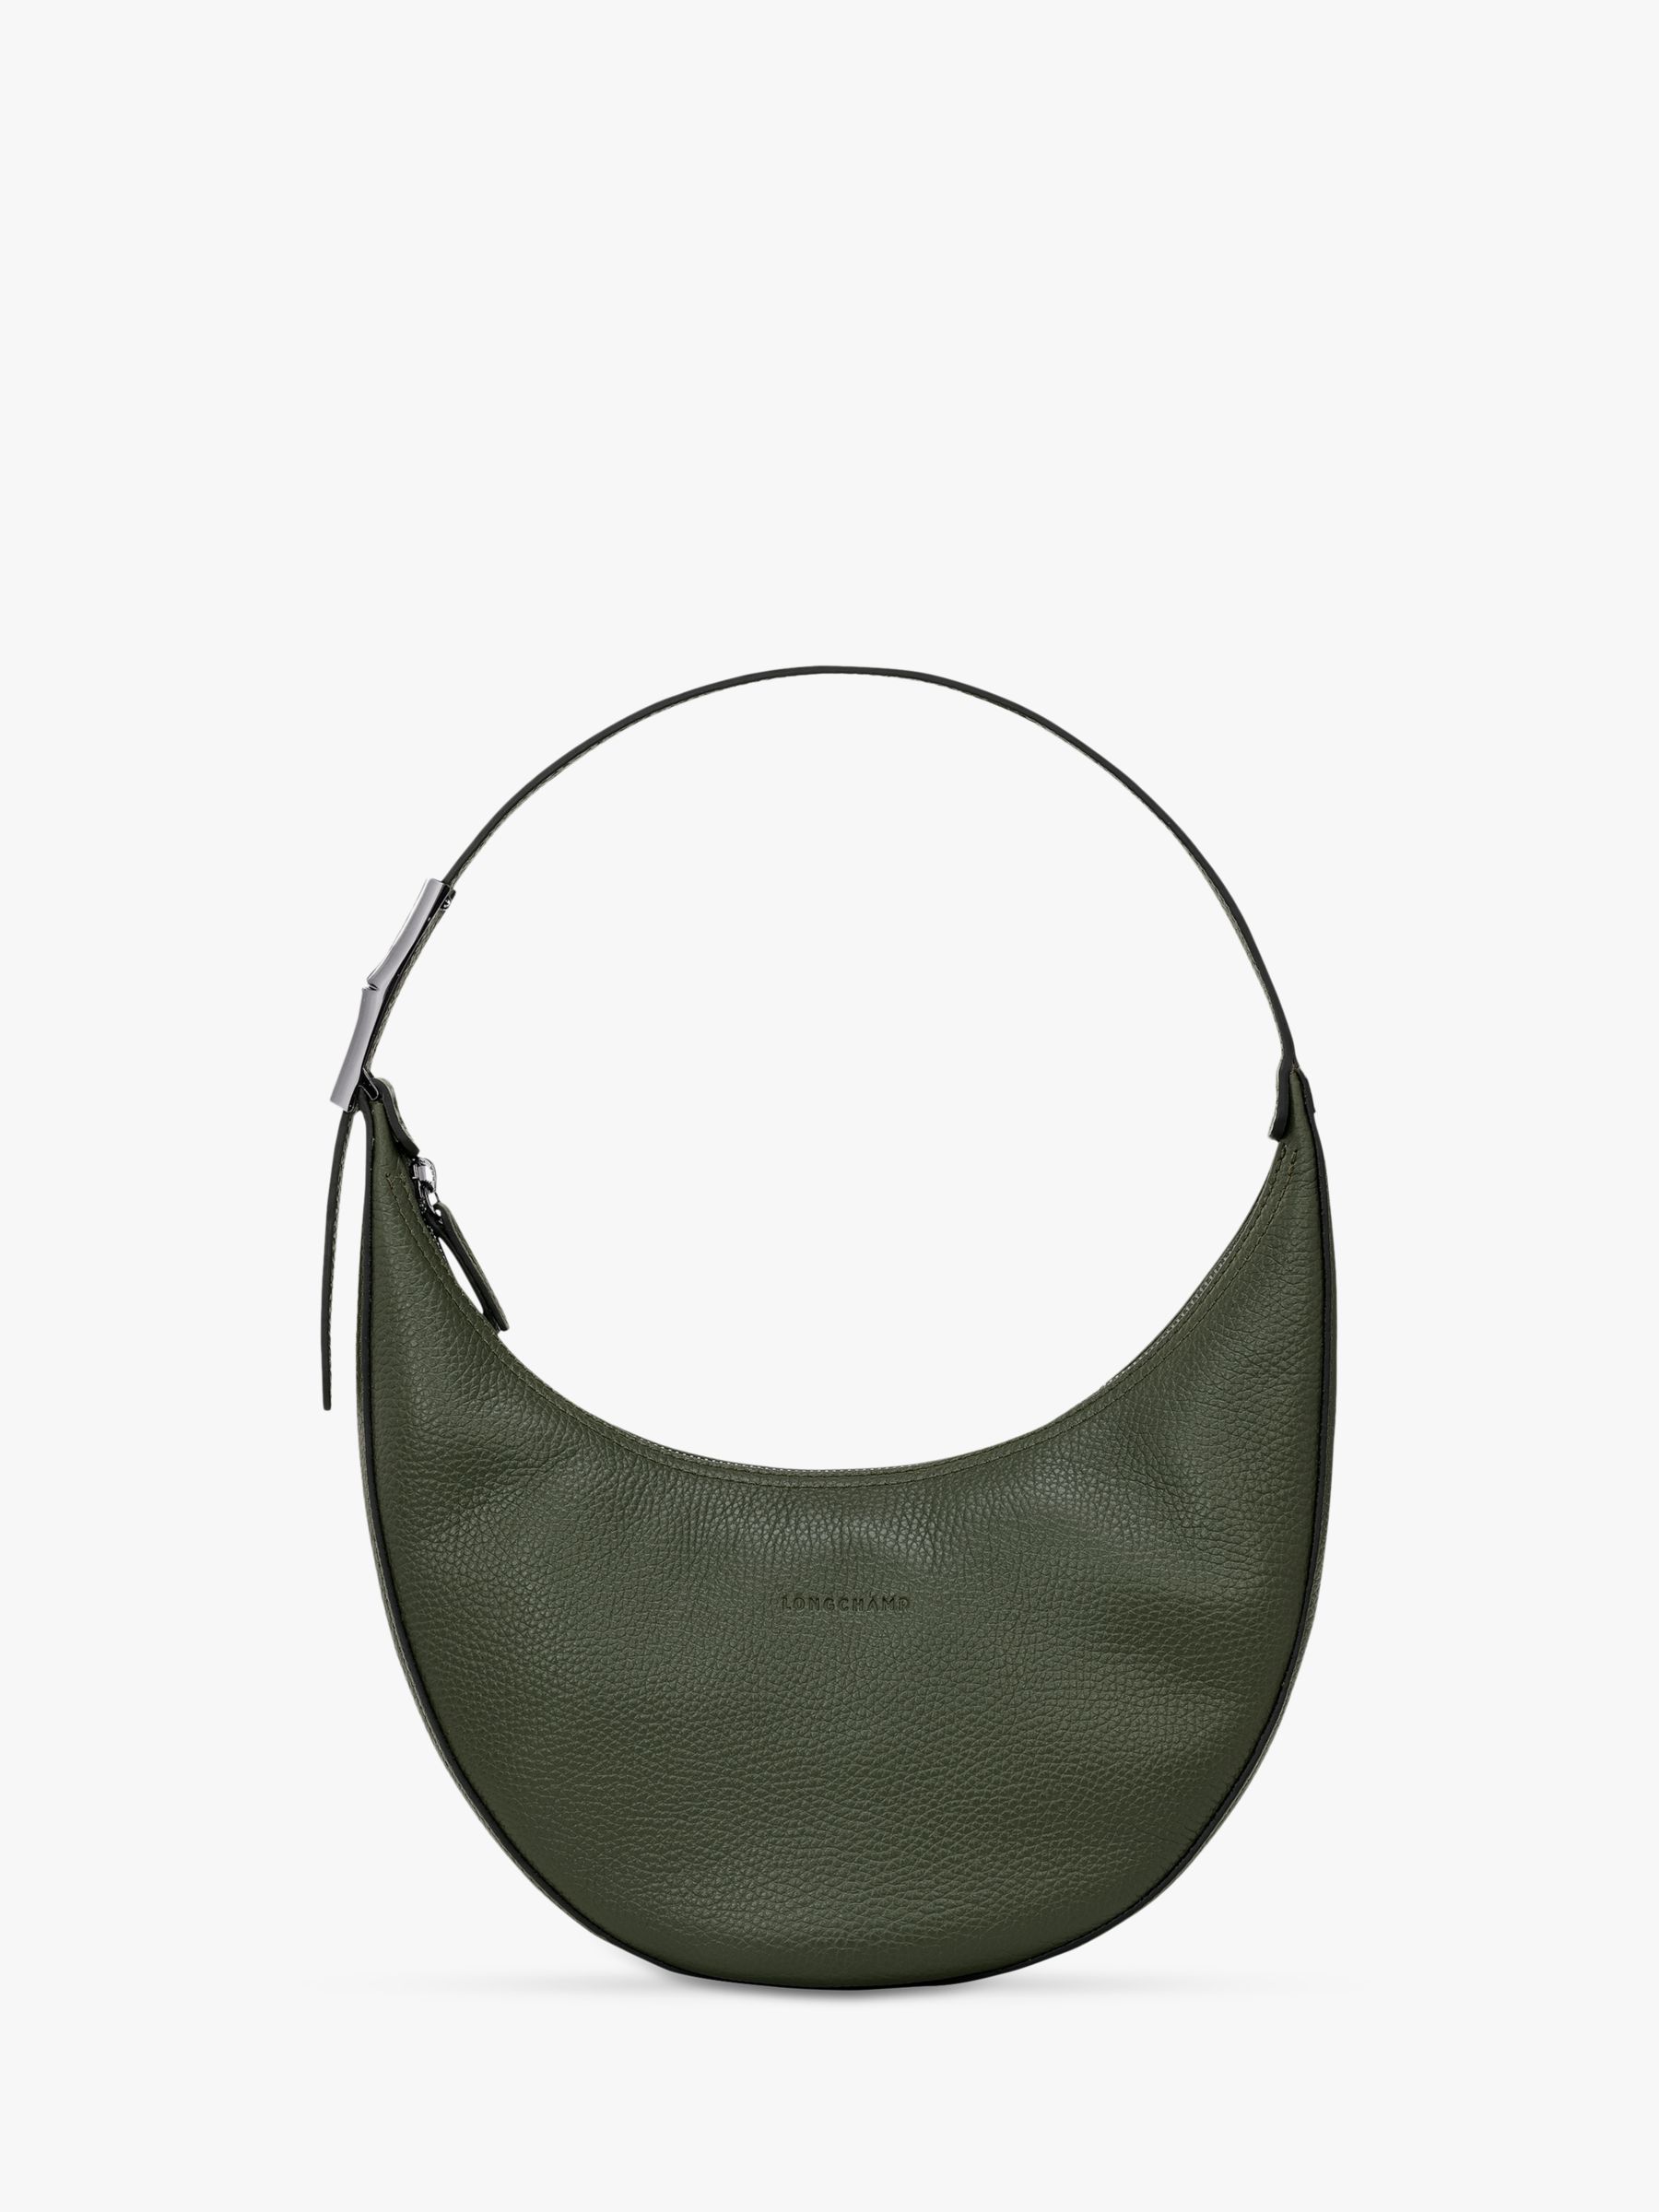 Longchamp Roseau Essential Hobo Bag, Khaki at John Lewis & Partners